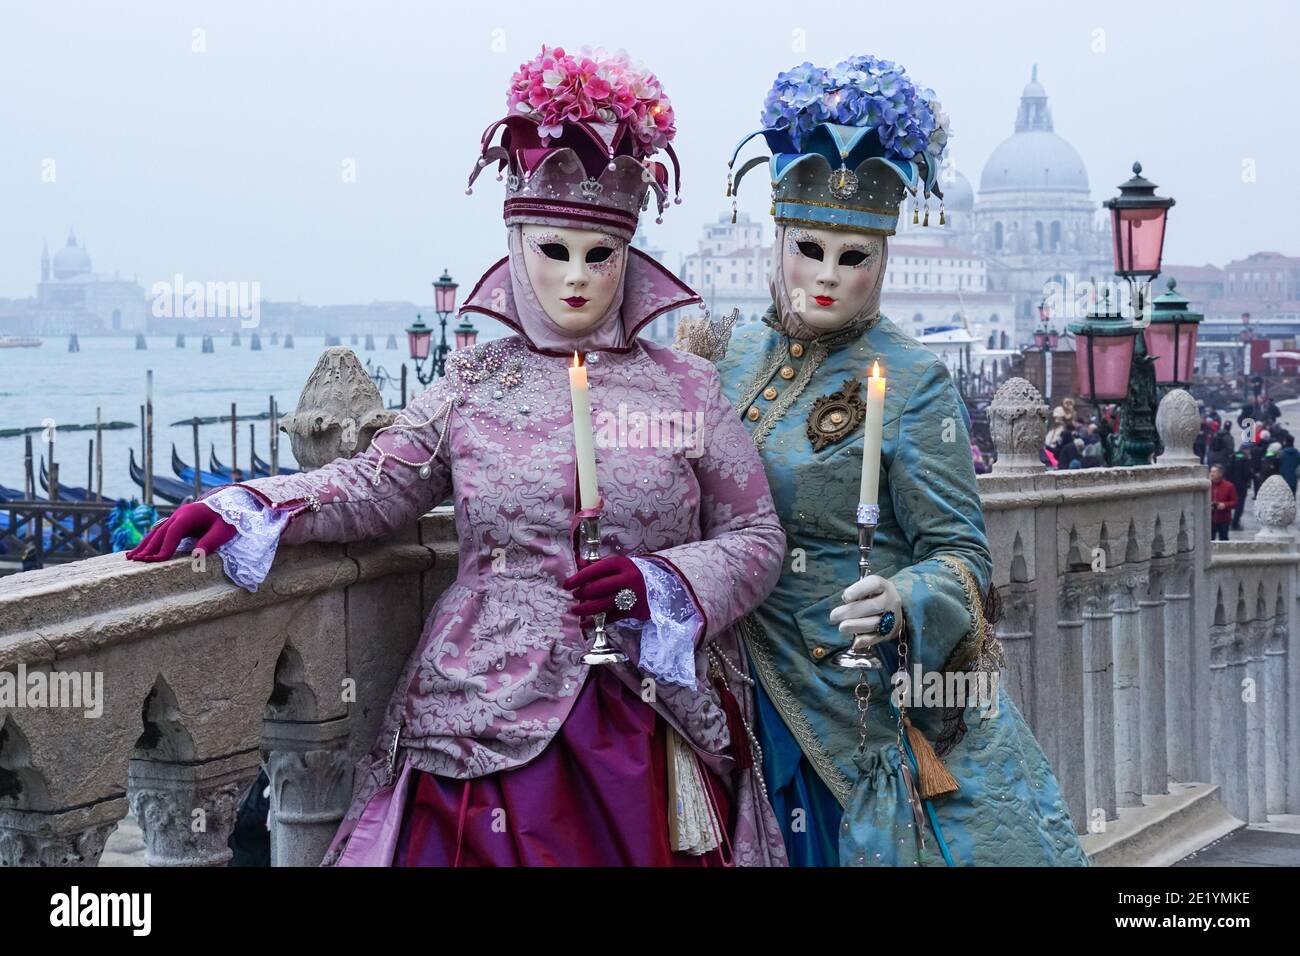 Frauen in traditionell dekorierten Kostümen und bemalten Masken während des Karnevals in Venedig, Italien Stockfoto